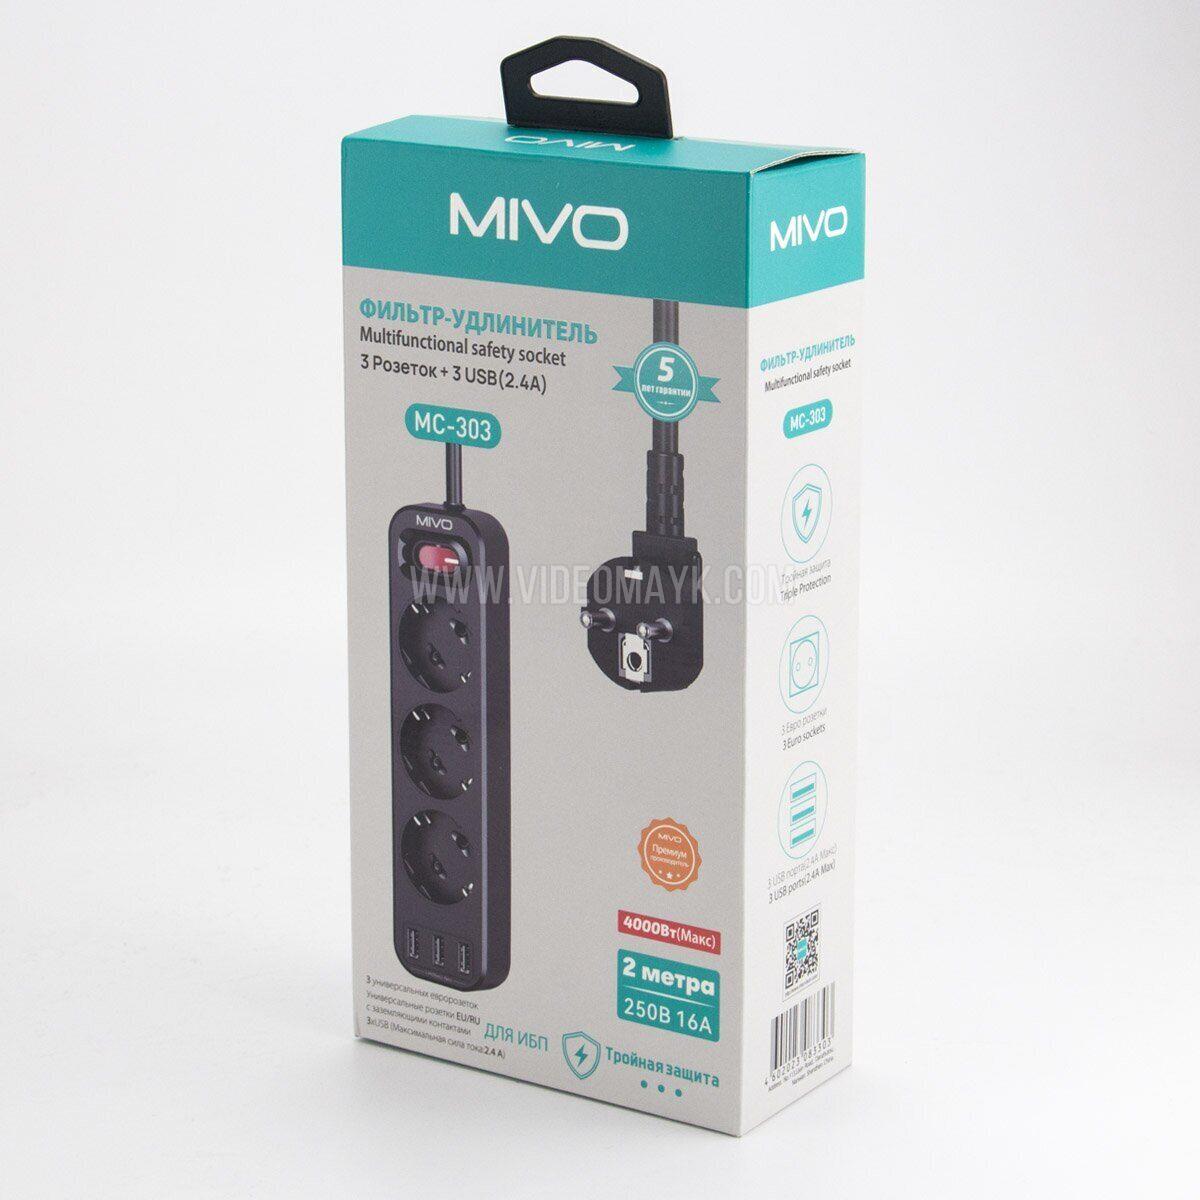 Фильтр-удлинитель Mivo MС-303 3 розетки+3 USB